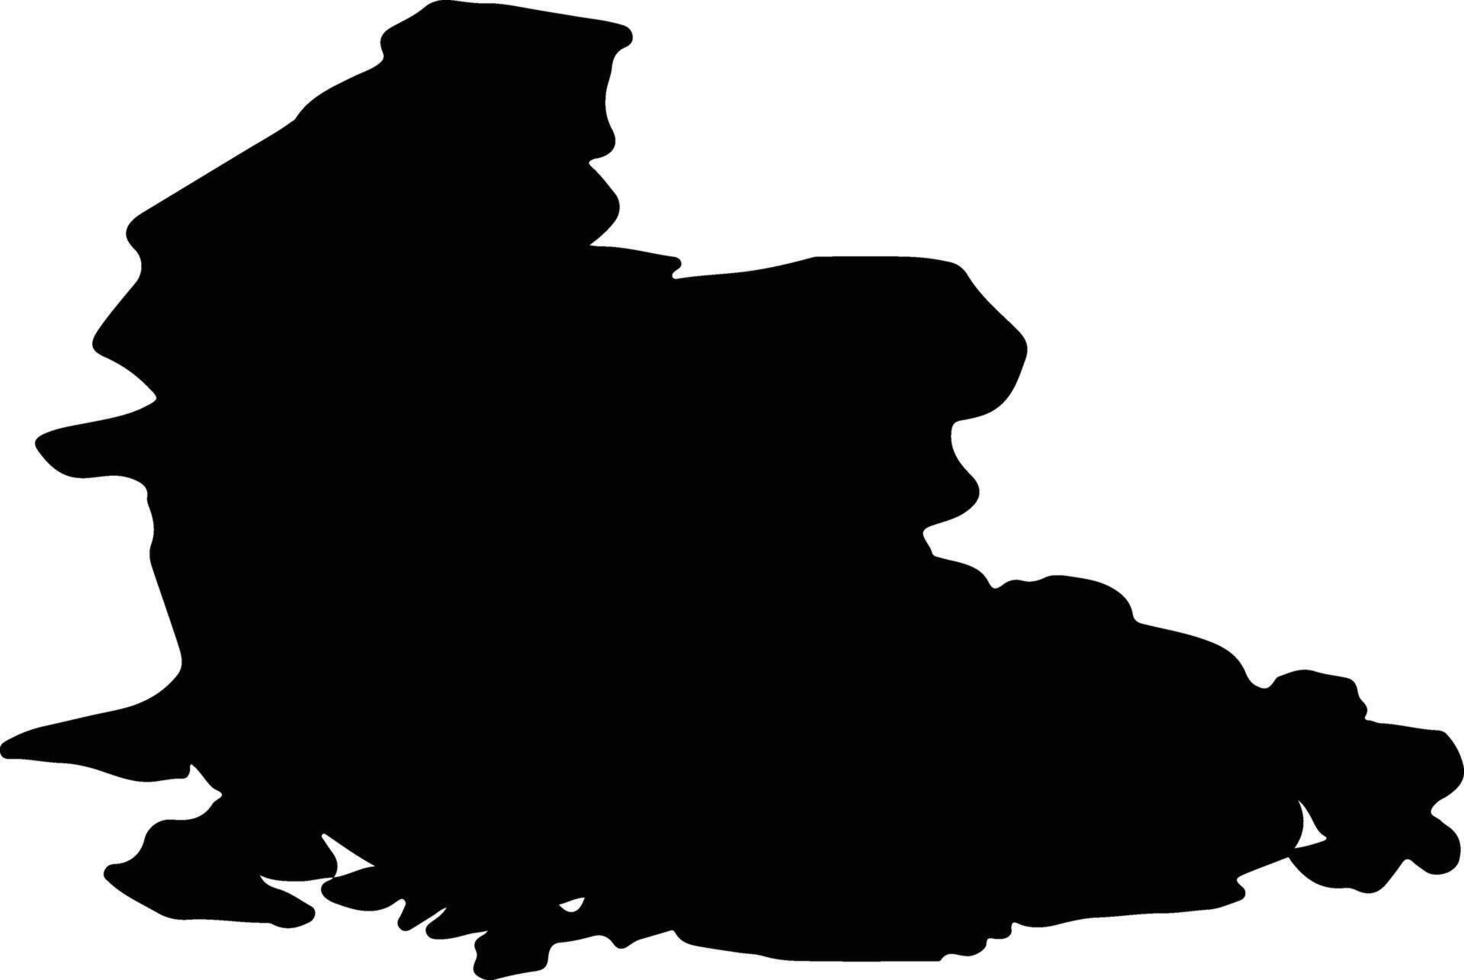 gilet-agder Norvège silhouette carte vecteur